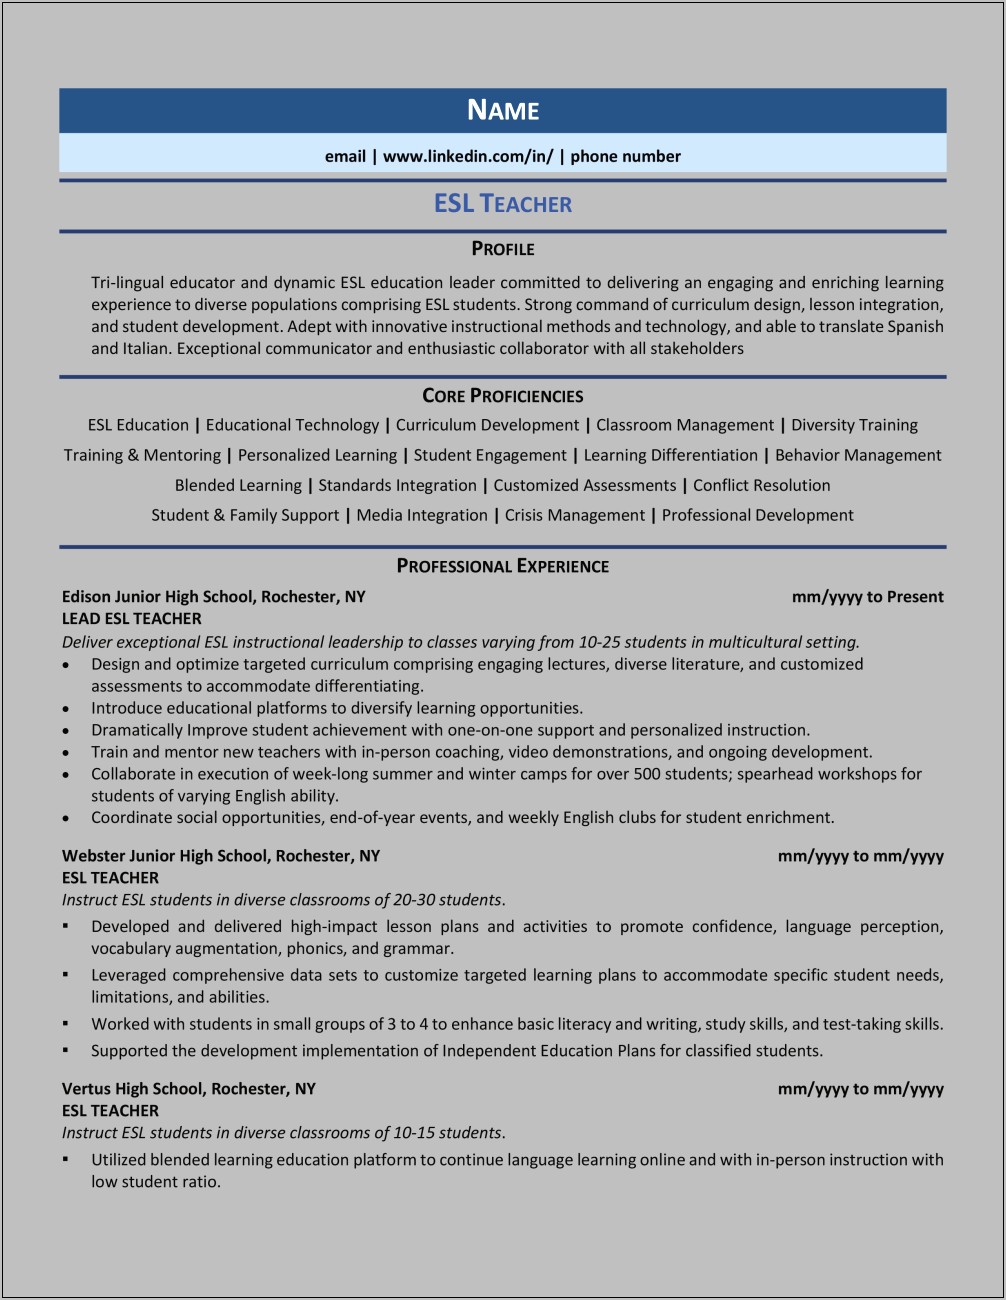 Sample Resume For Online English Teachers